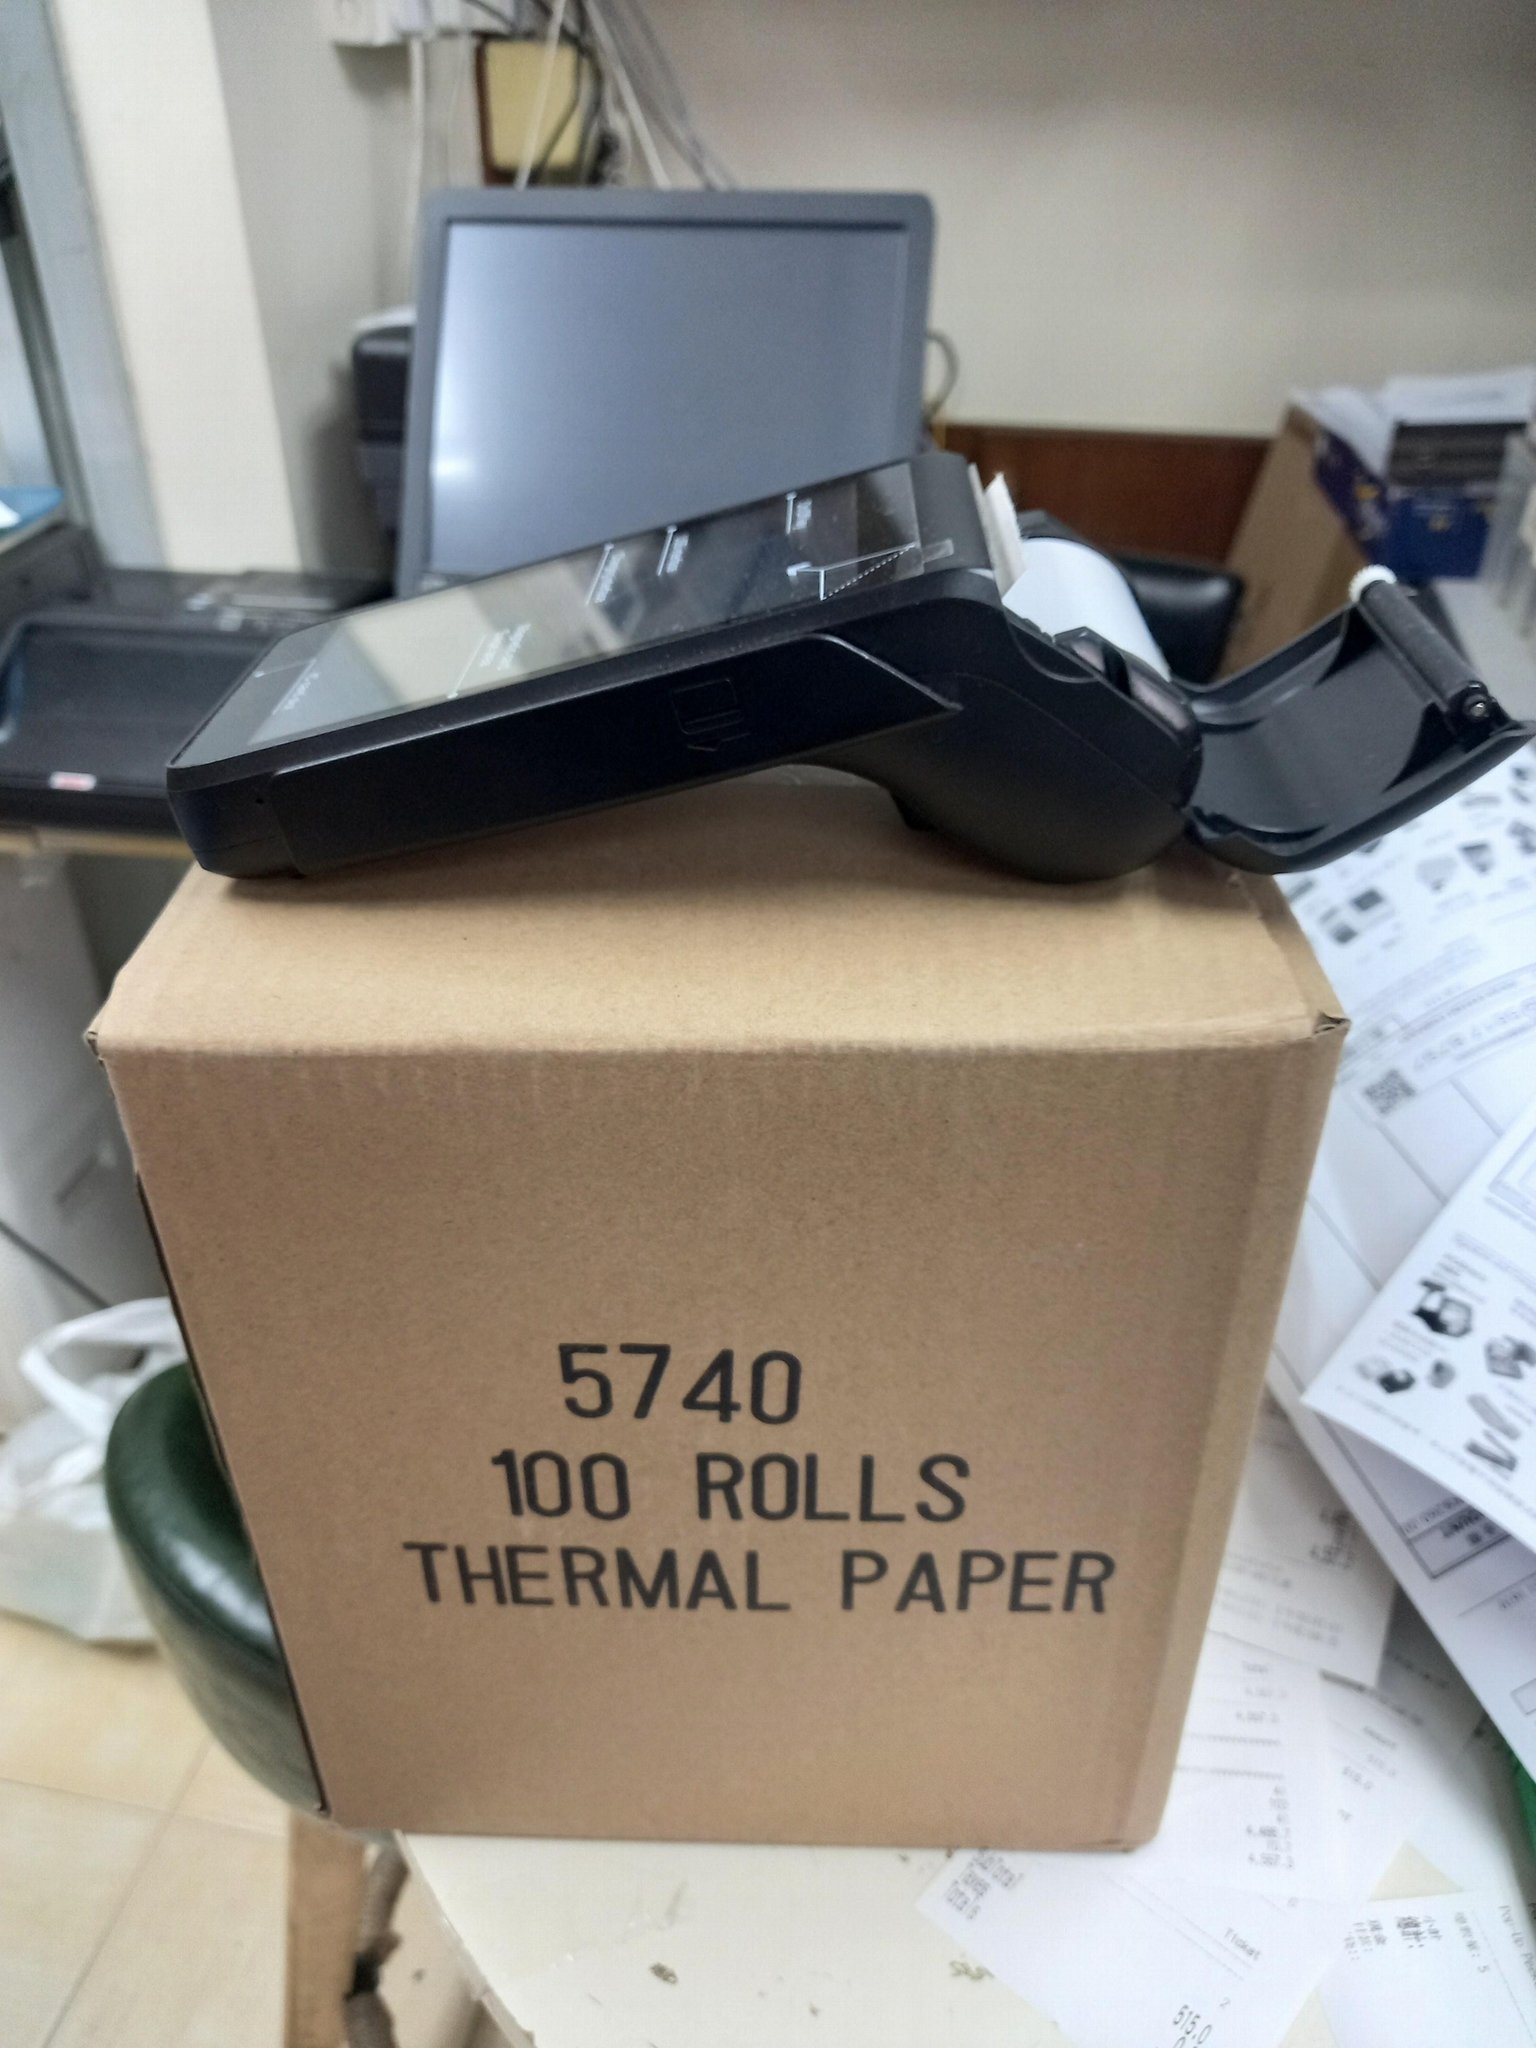 Thermal paper